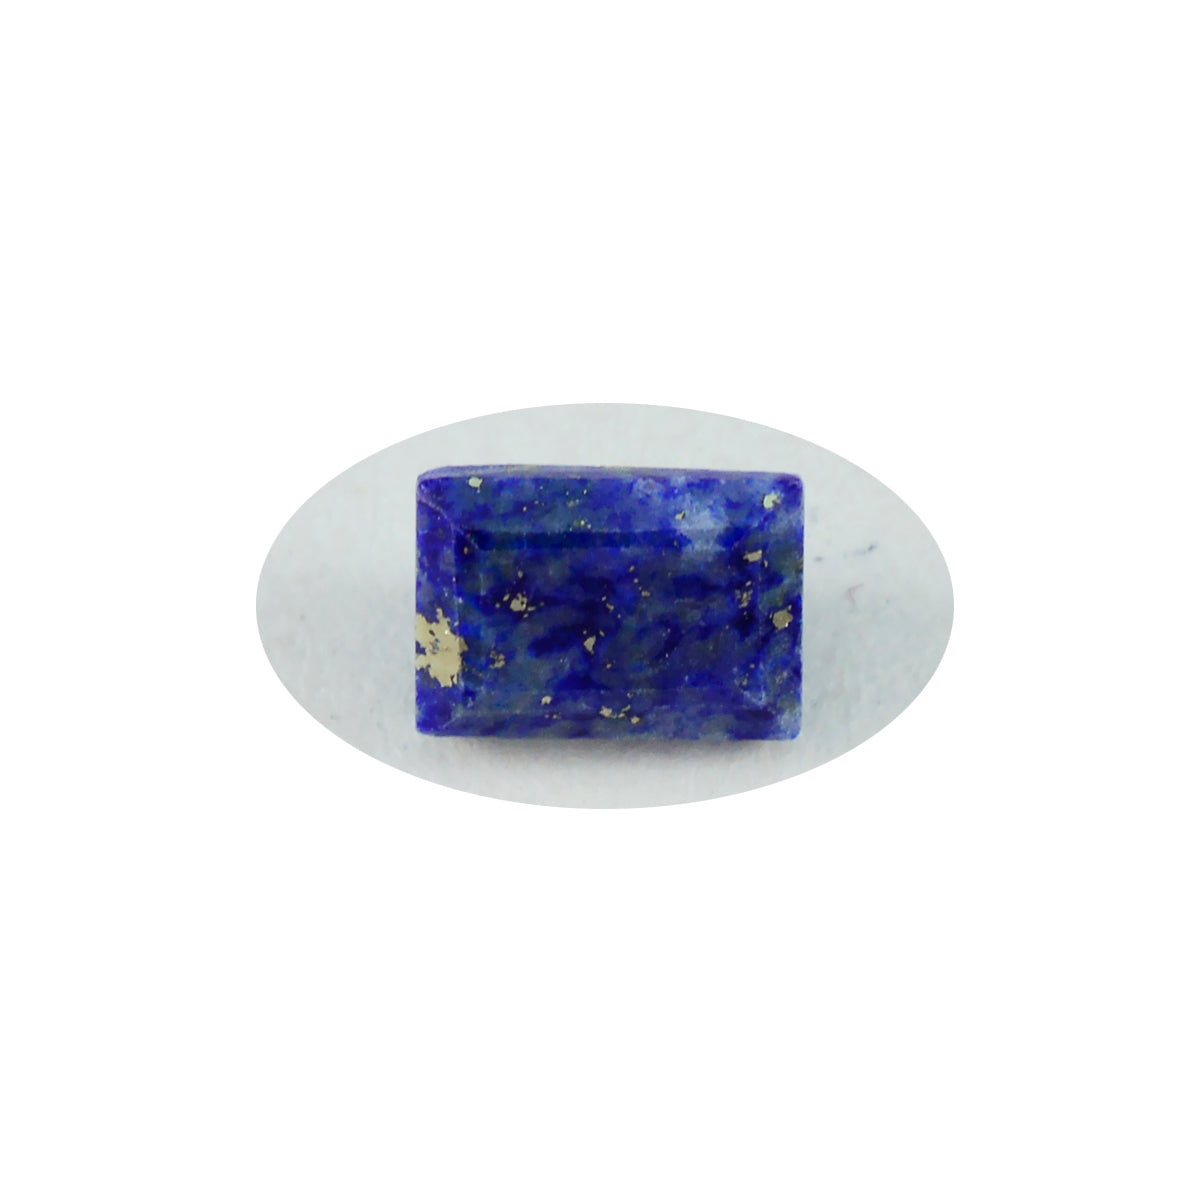 riyogems 1 шт. натуральный синий лазурит ограненный 8x10 мм восьмиугольной формы красивые качественные свободные драгоценные камни